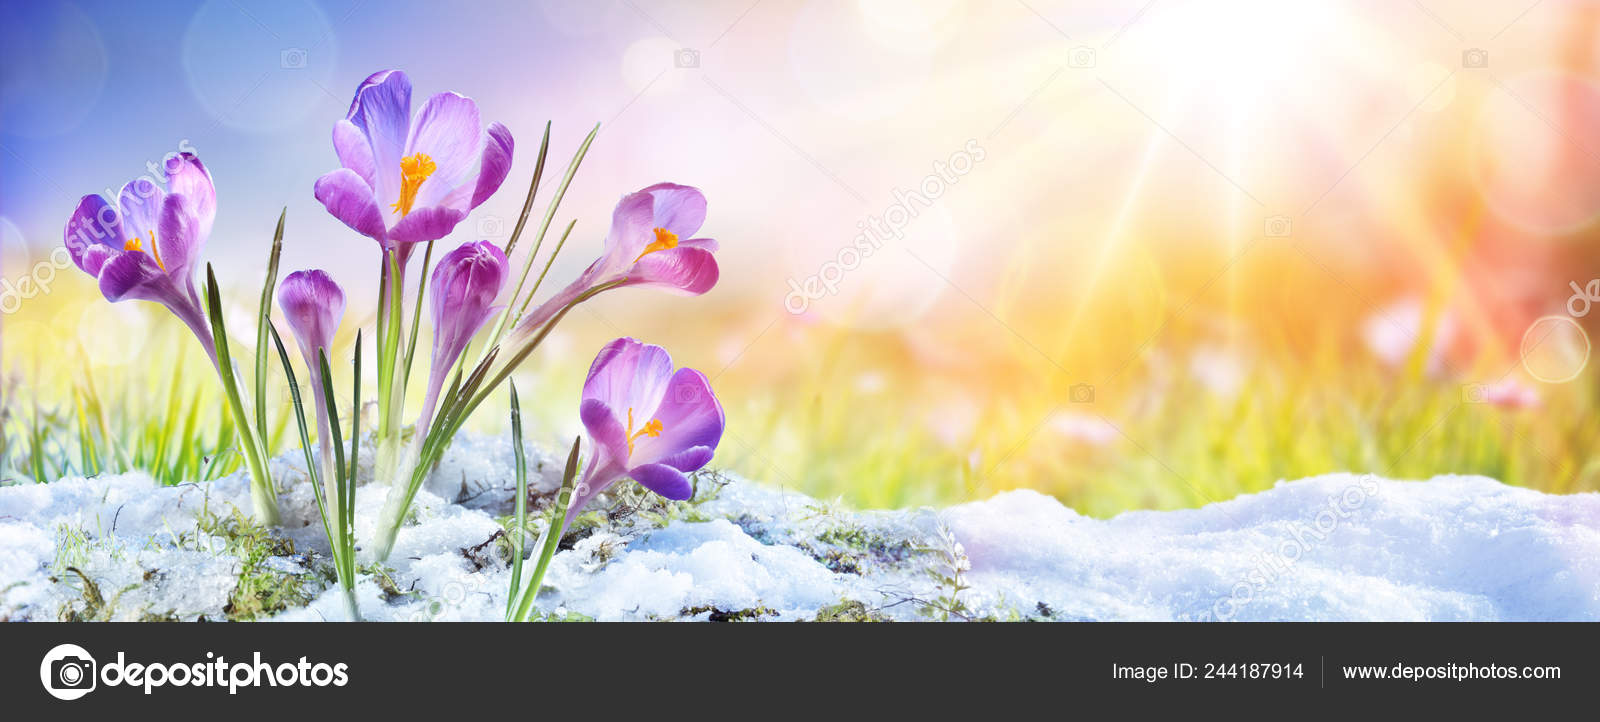 depositphotos 244187914 stock photo springtime crocus flower growth snow